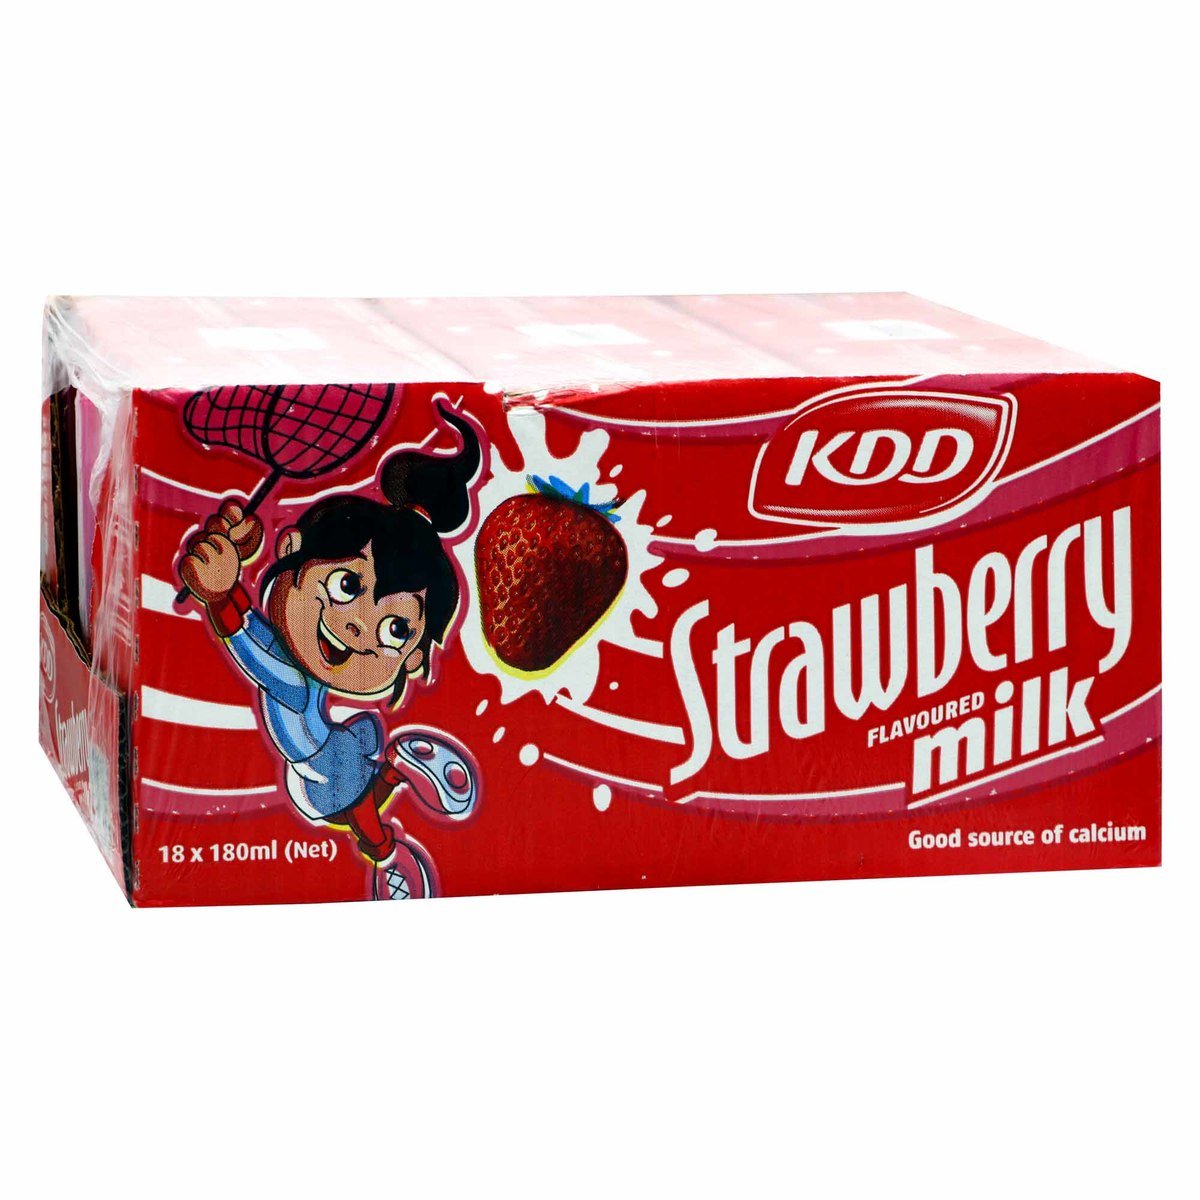 KDD Strawberry Flavoured Milk 6 x 180 ml